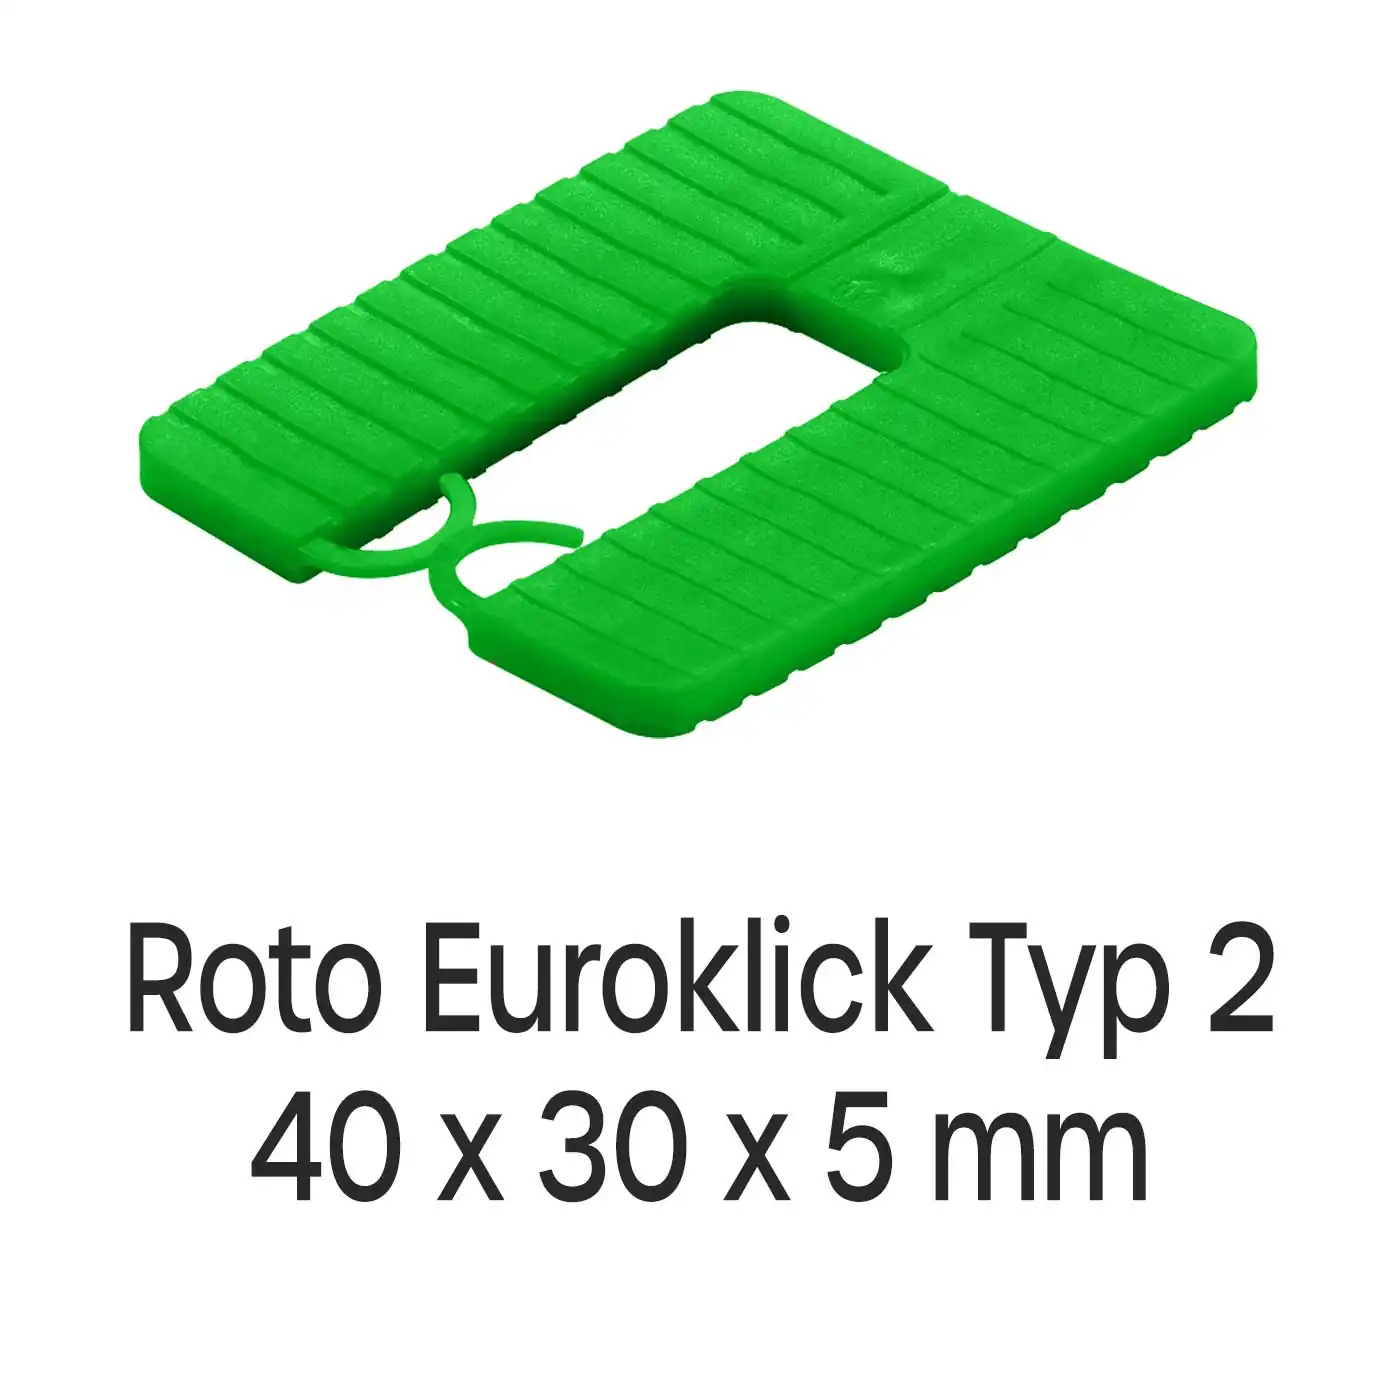 Distanzplatten Roto Euroklick Typ 2 40 x 30 x 5 mm 1000 Stück